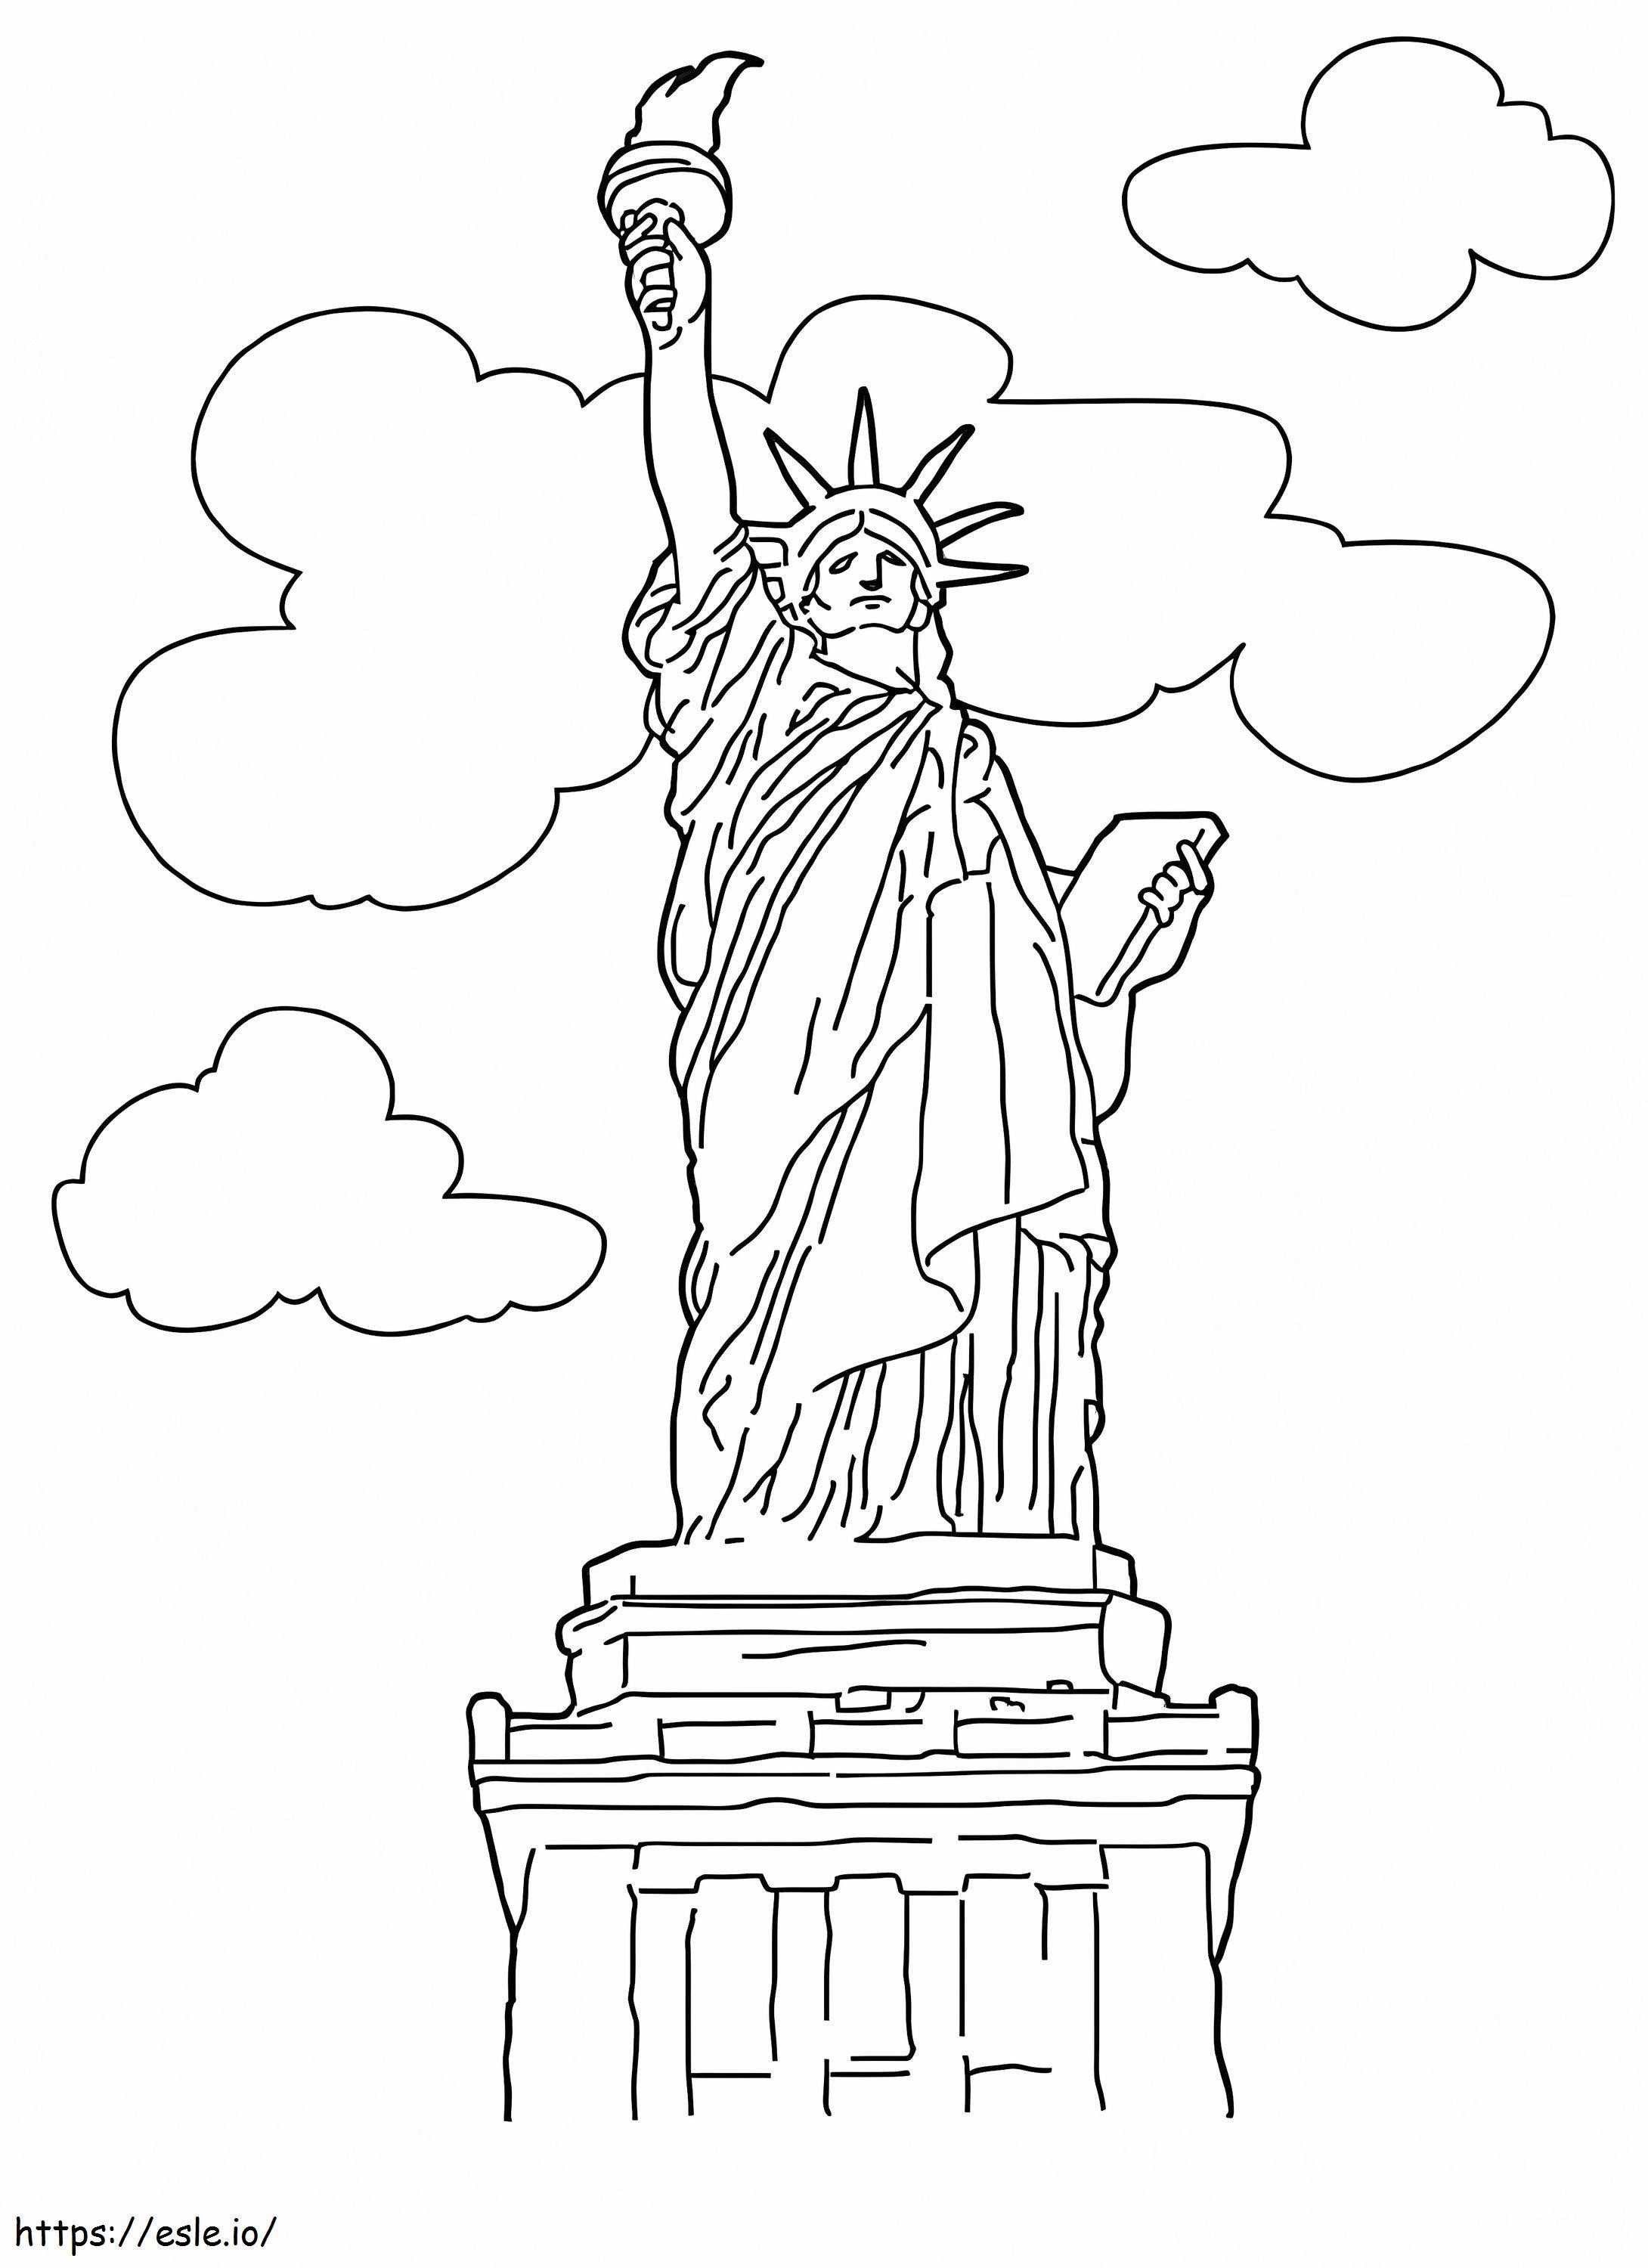 Estatua de la libertad y nube para colorear